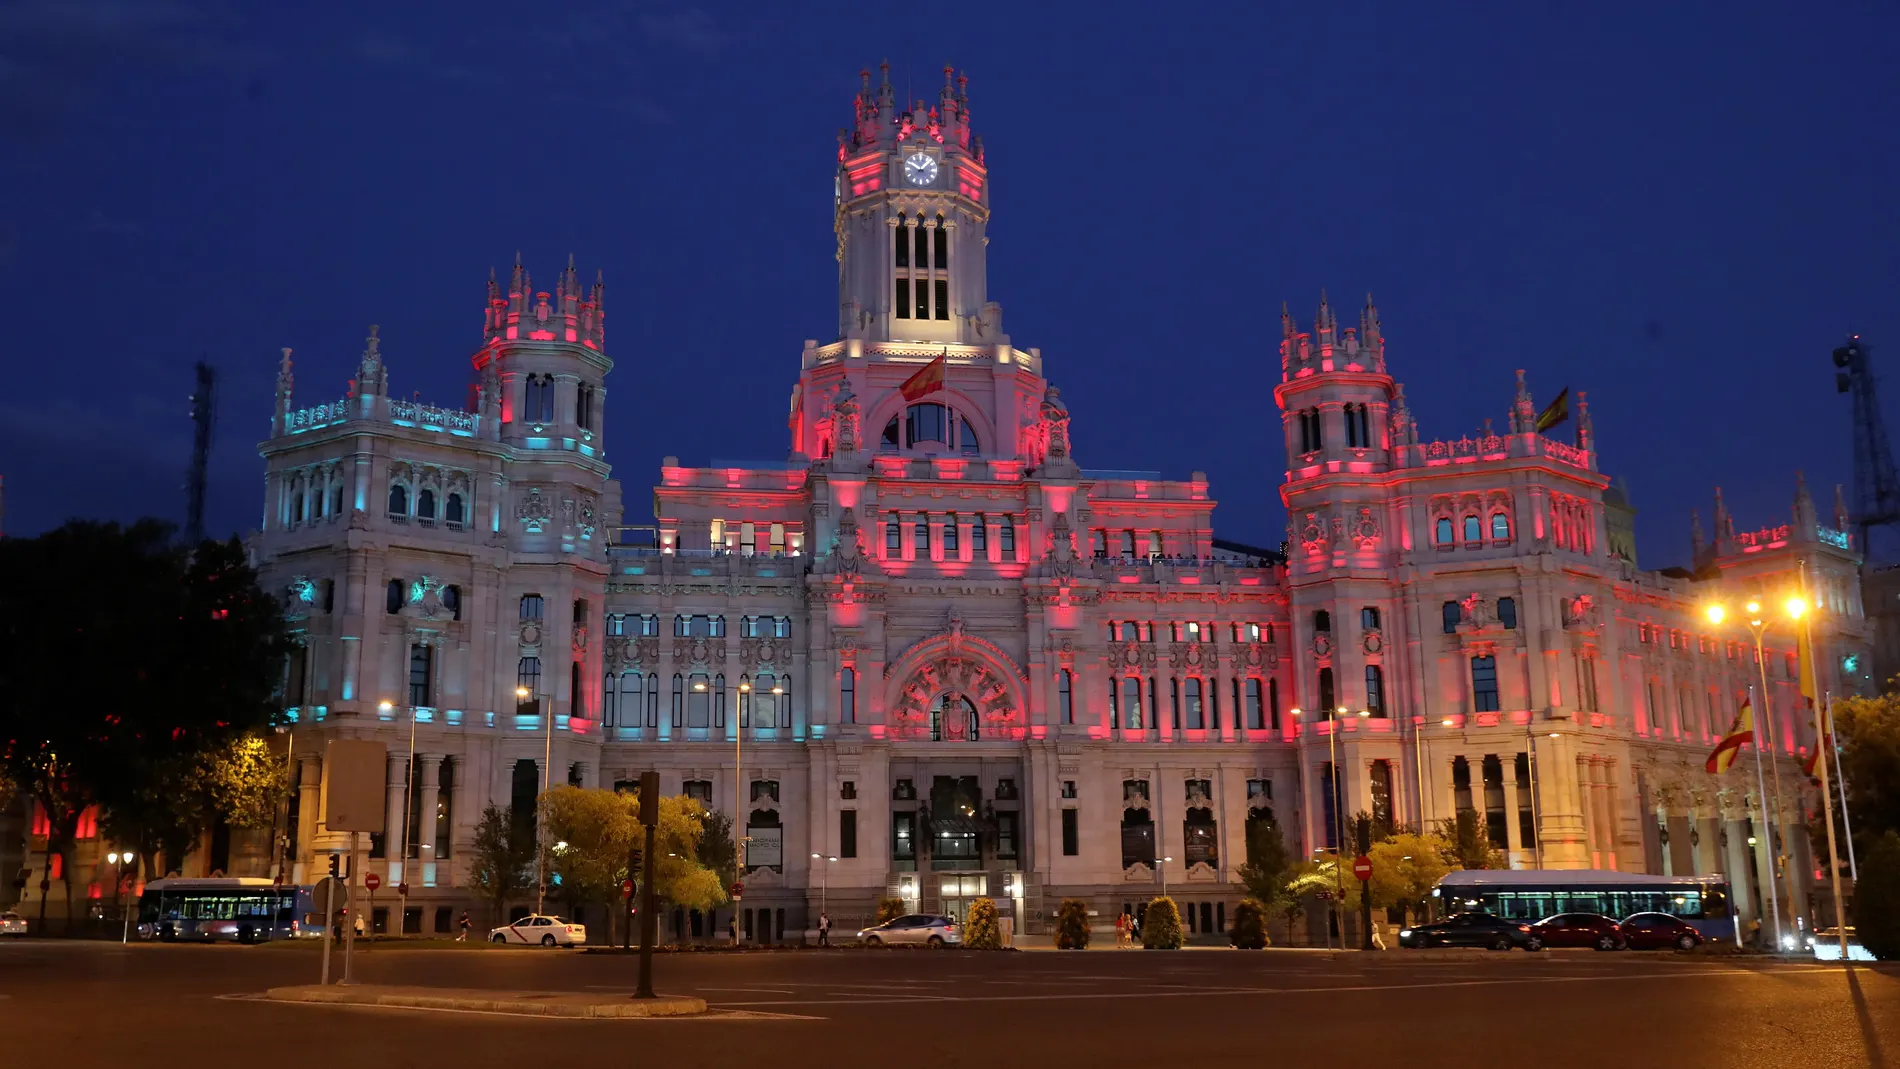 La fachada del Palacio de Cibeles, sede del Ayuntamiento de Madrid, iluminada con los colores de las banderas de España y Portugal